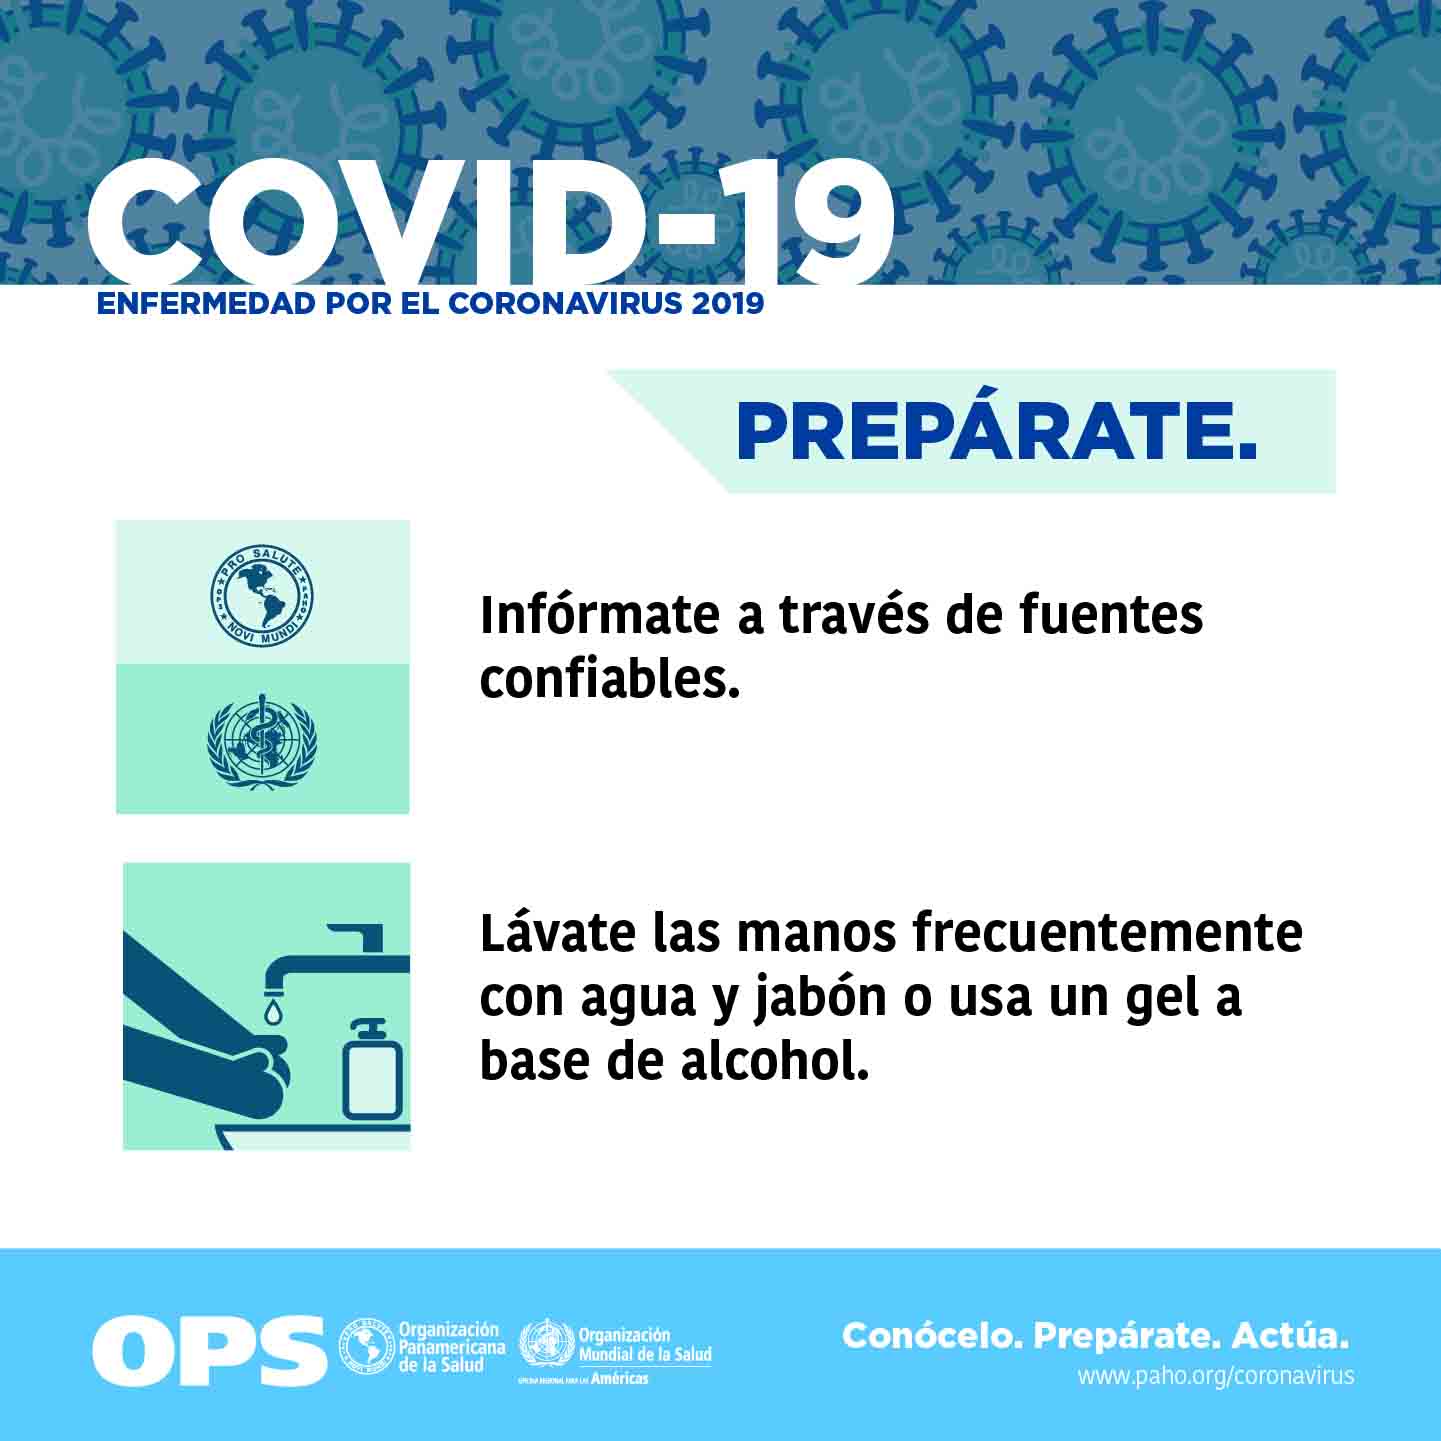 Pandemia de COVID-19